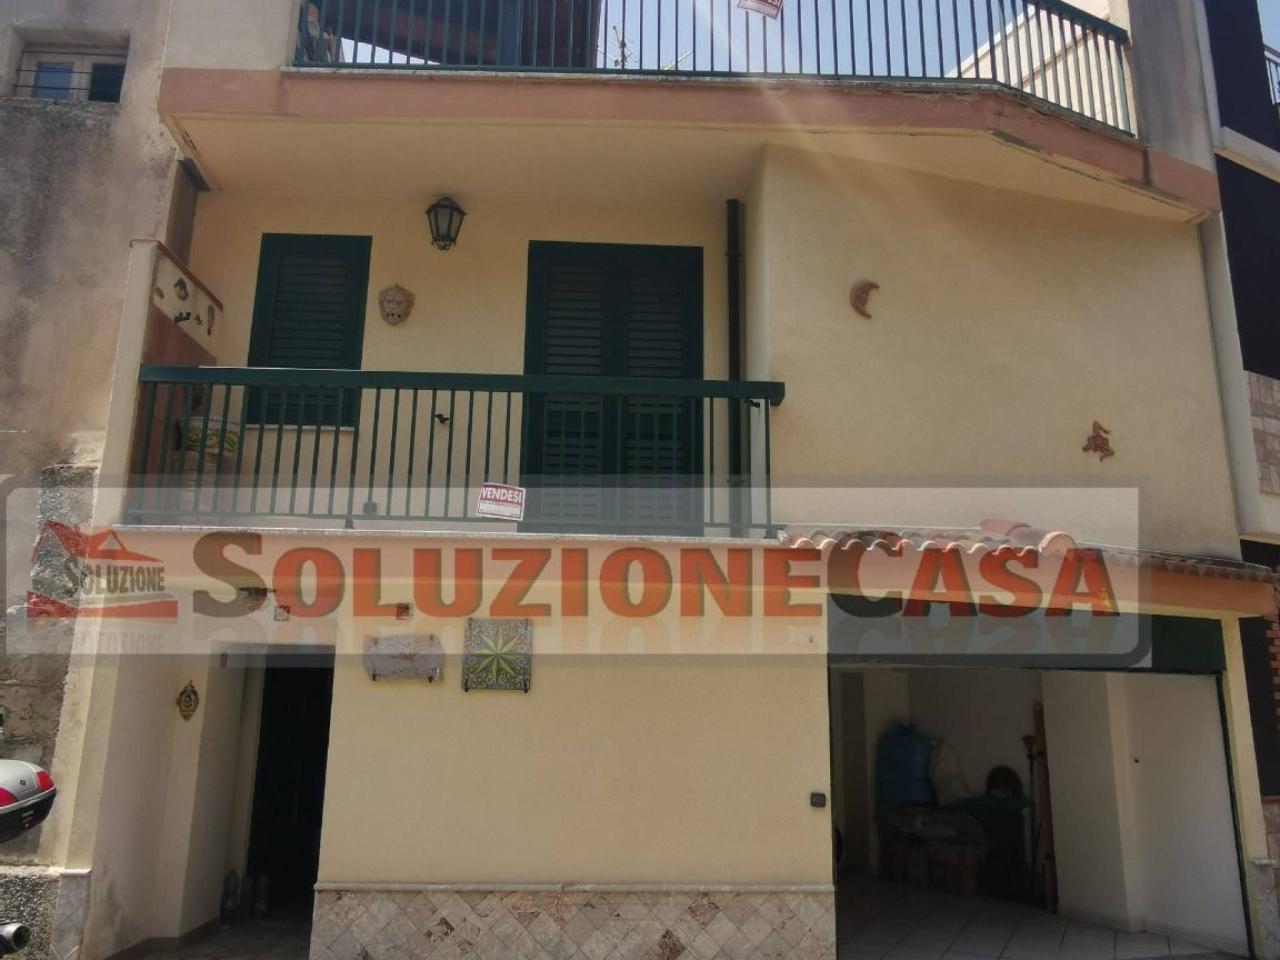 Villa in vendita a Pagliara